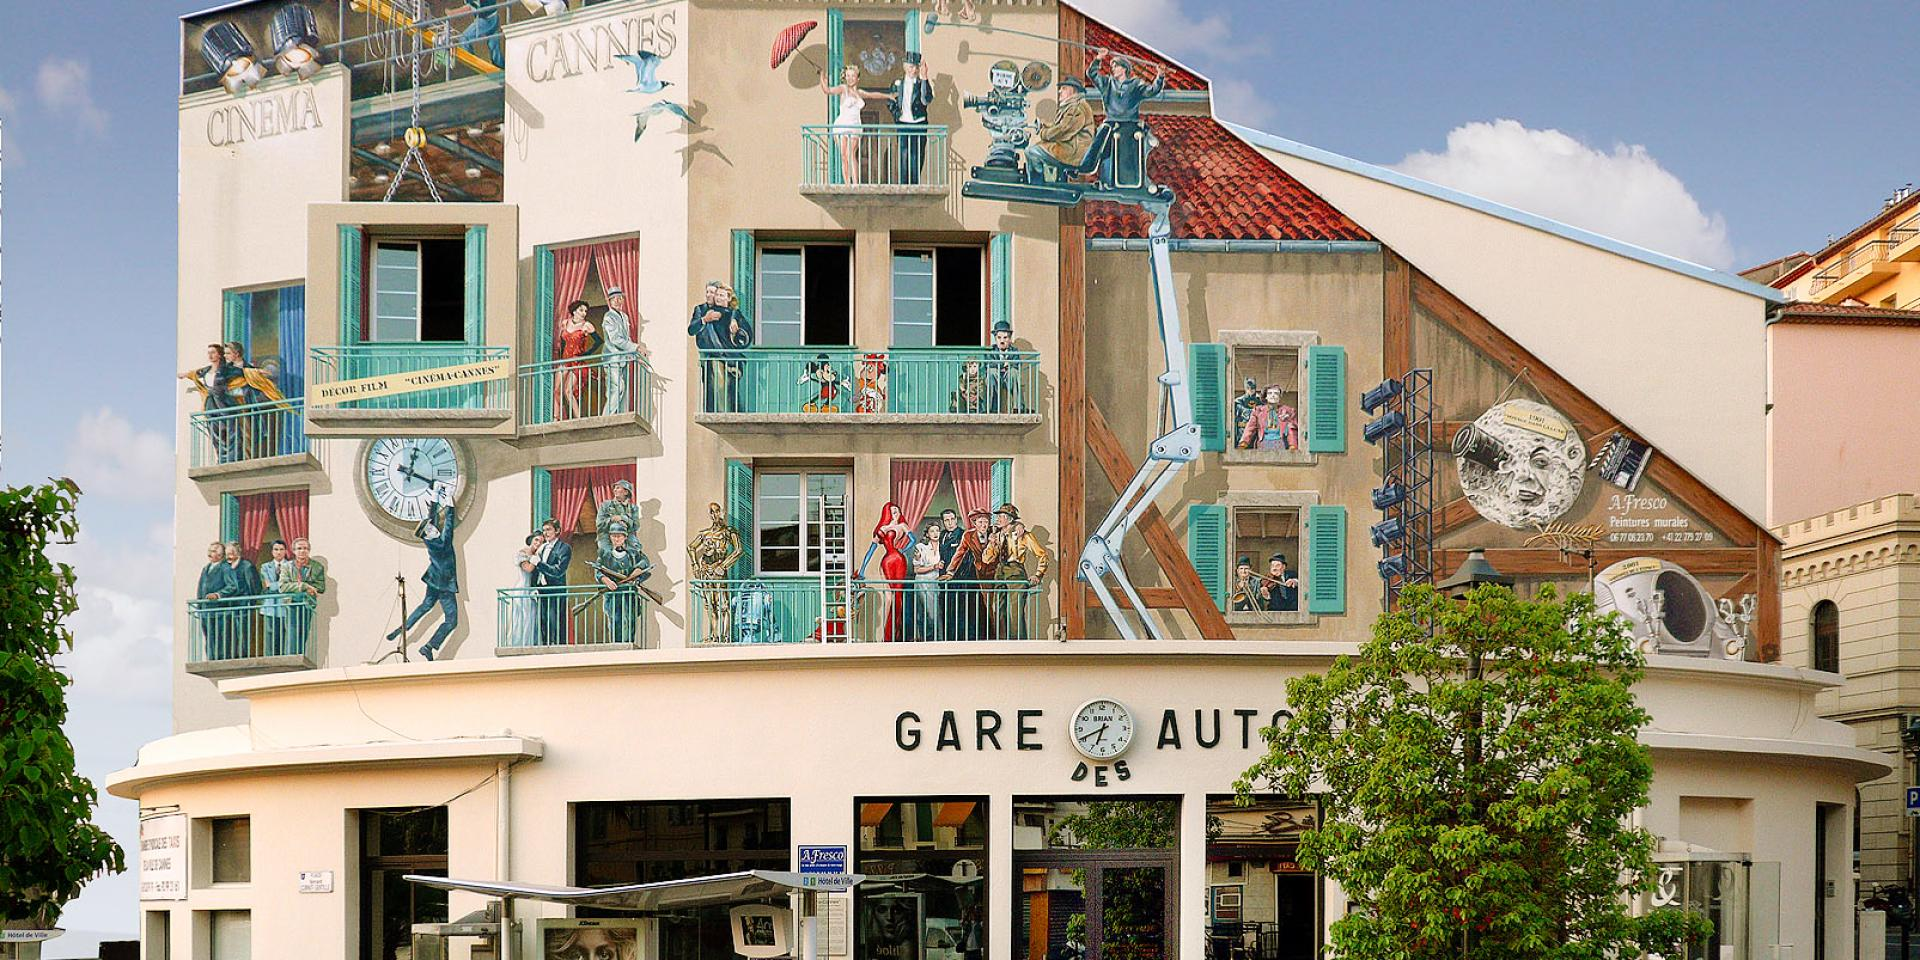 Visiter Cannes et admirer les murs peints © Cannesfrance